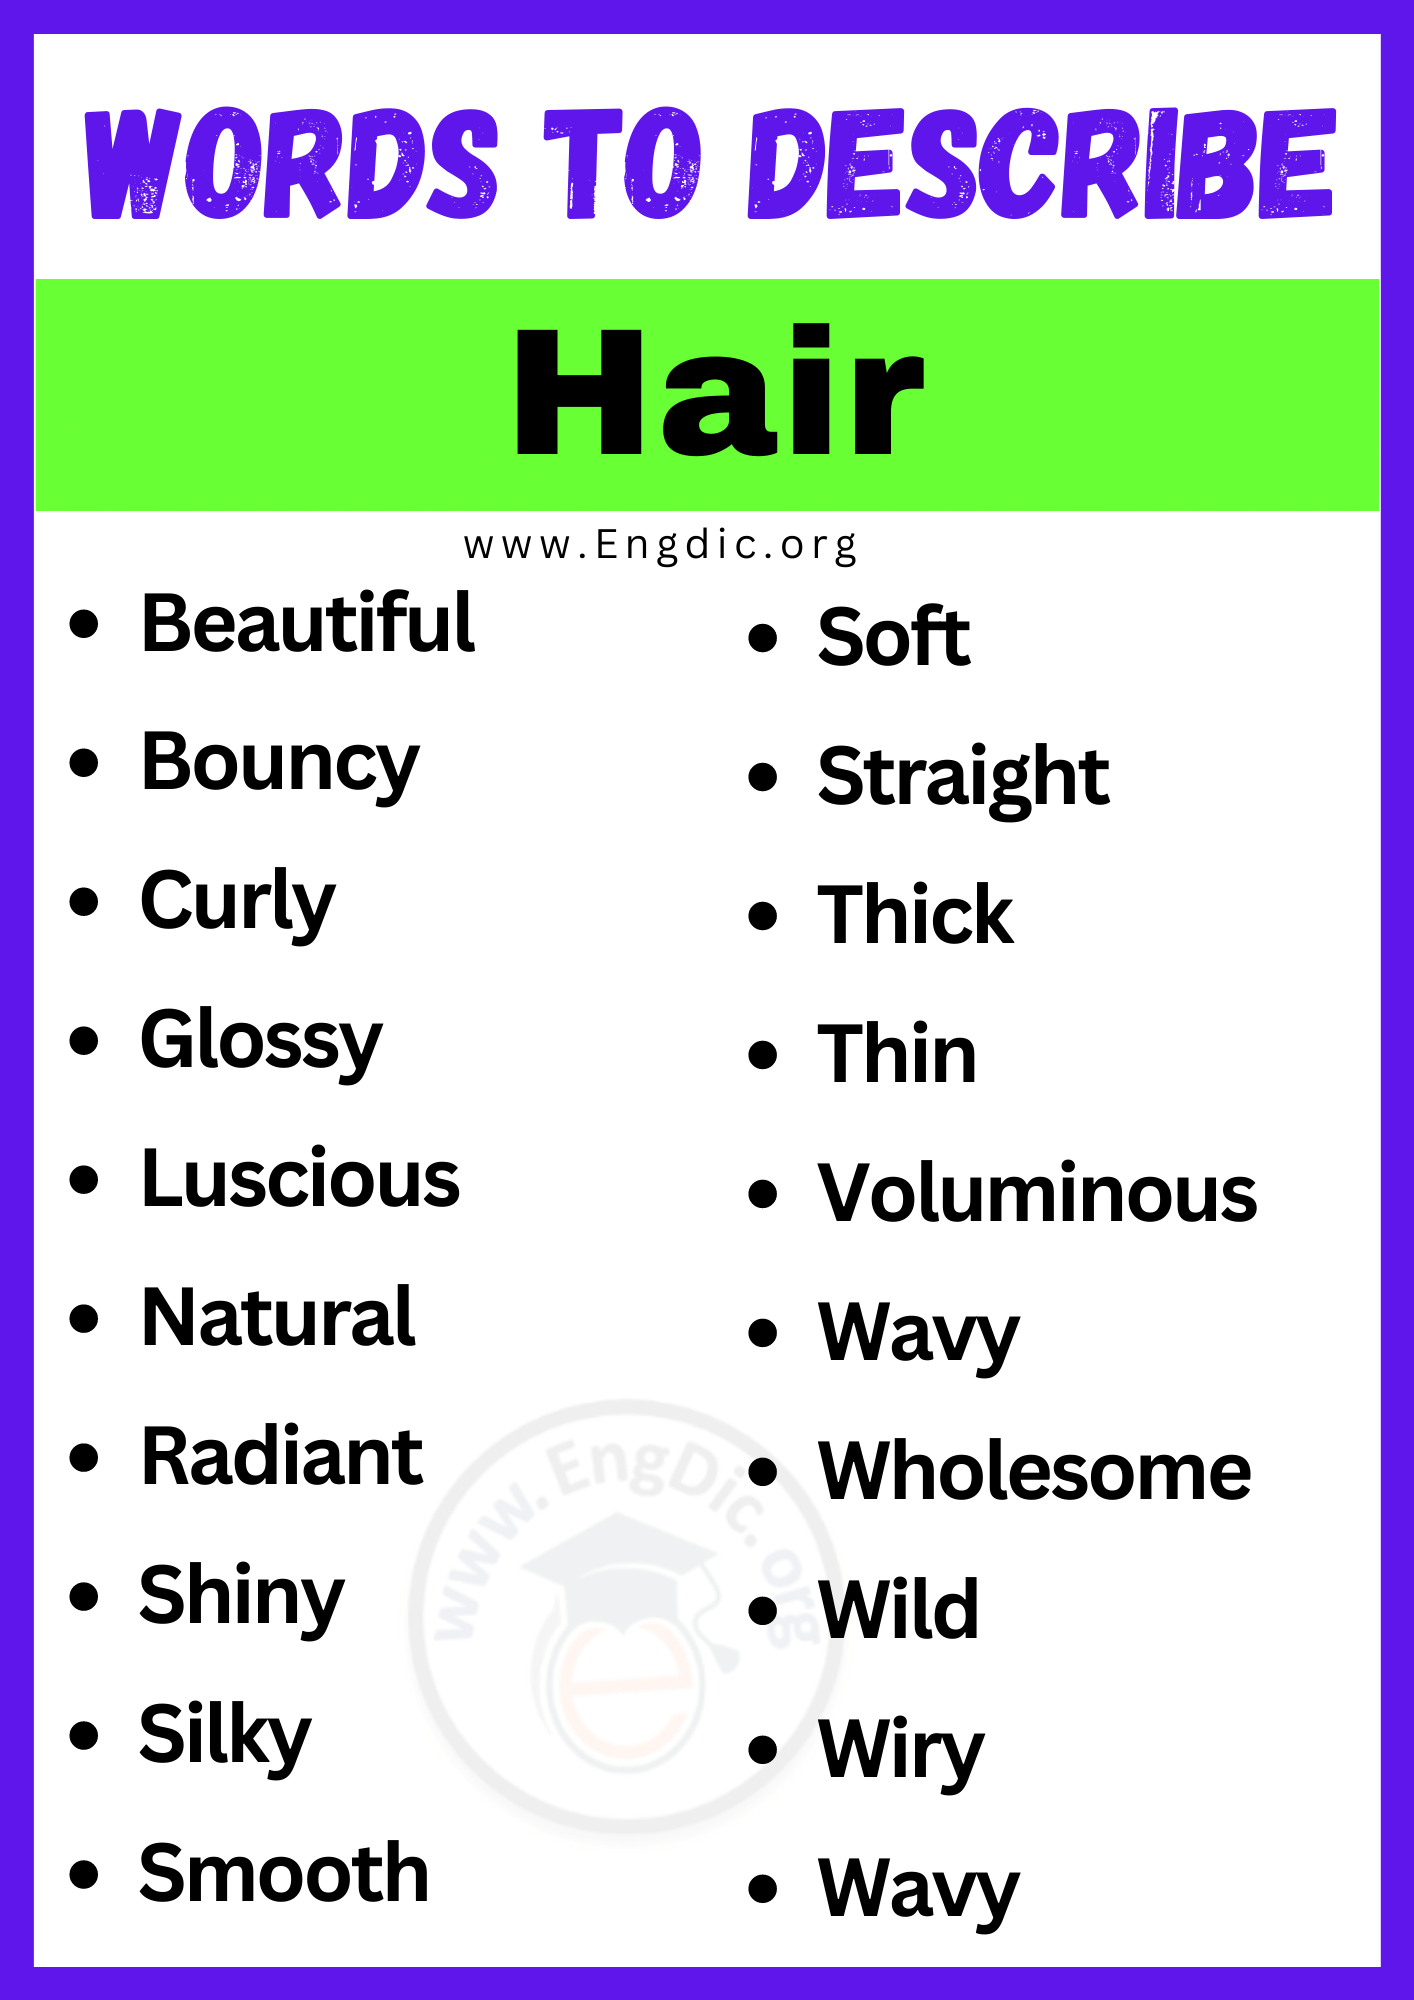 Words to Describe Hair